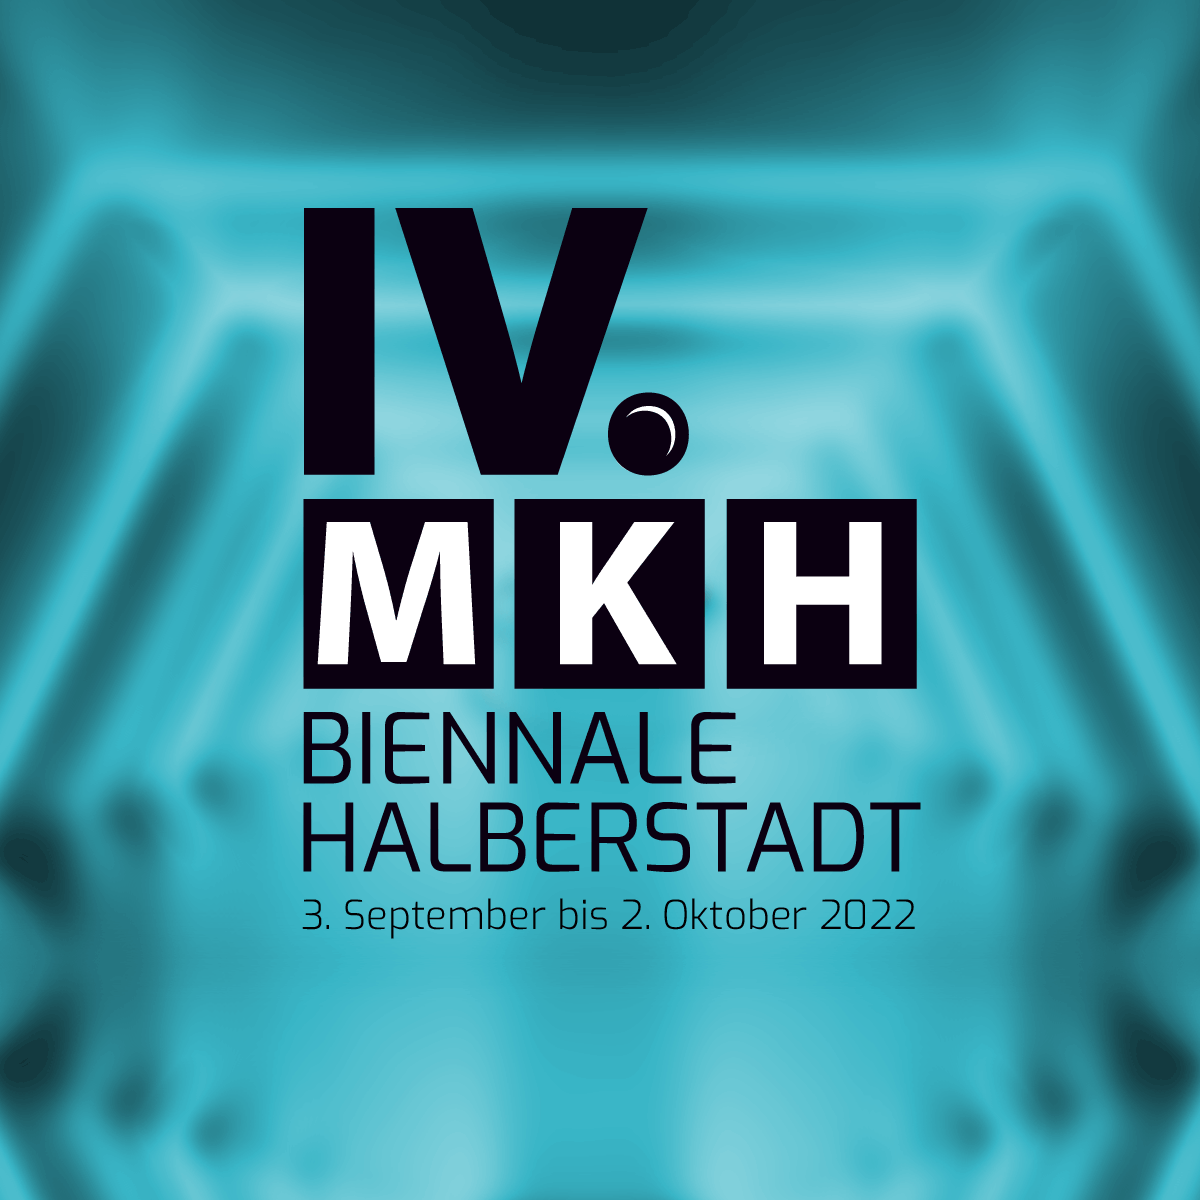 MKH Biennale Halberstadt 2022 – Monat-Kunst-Halberstadt